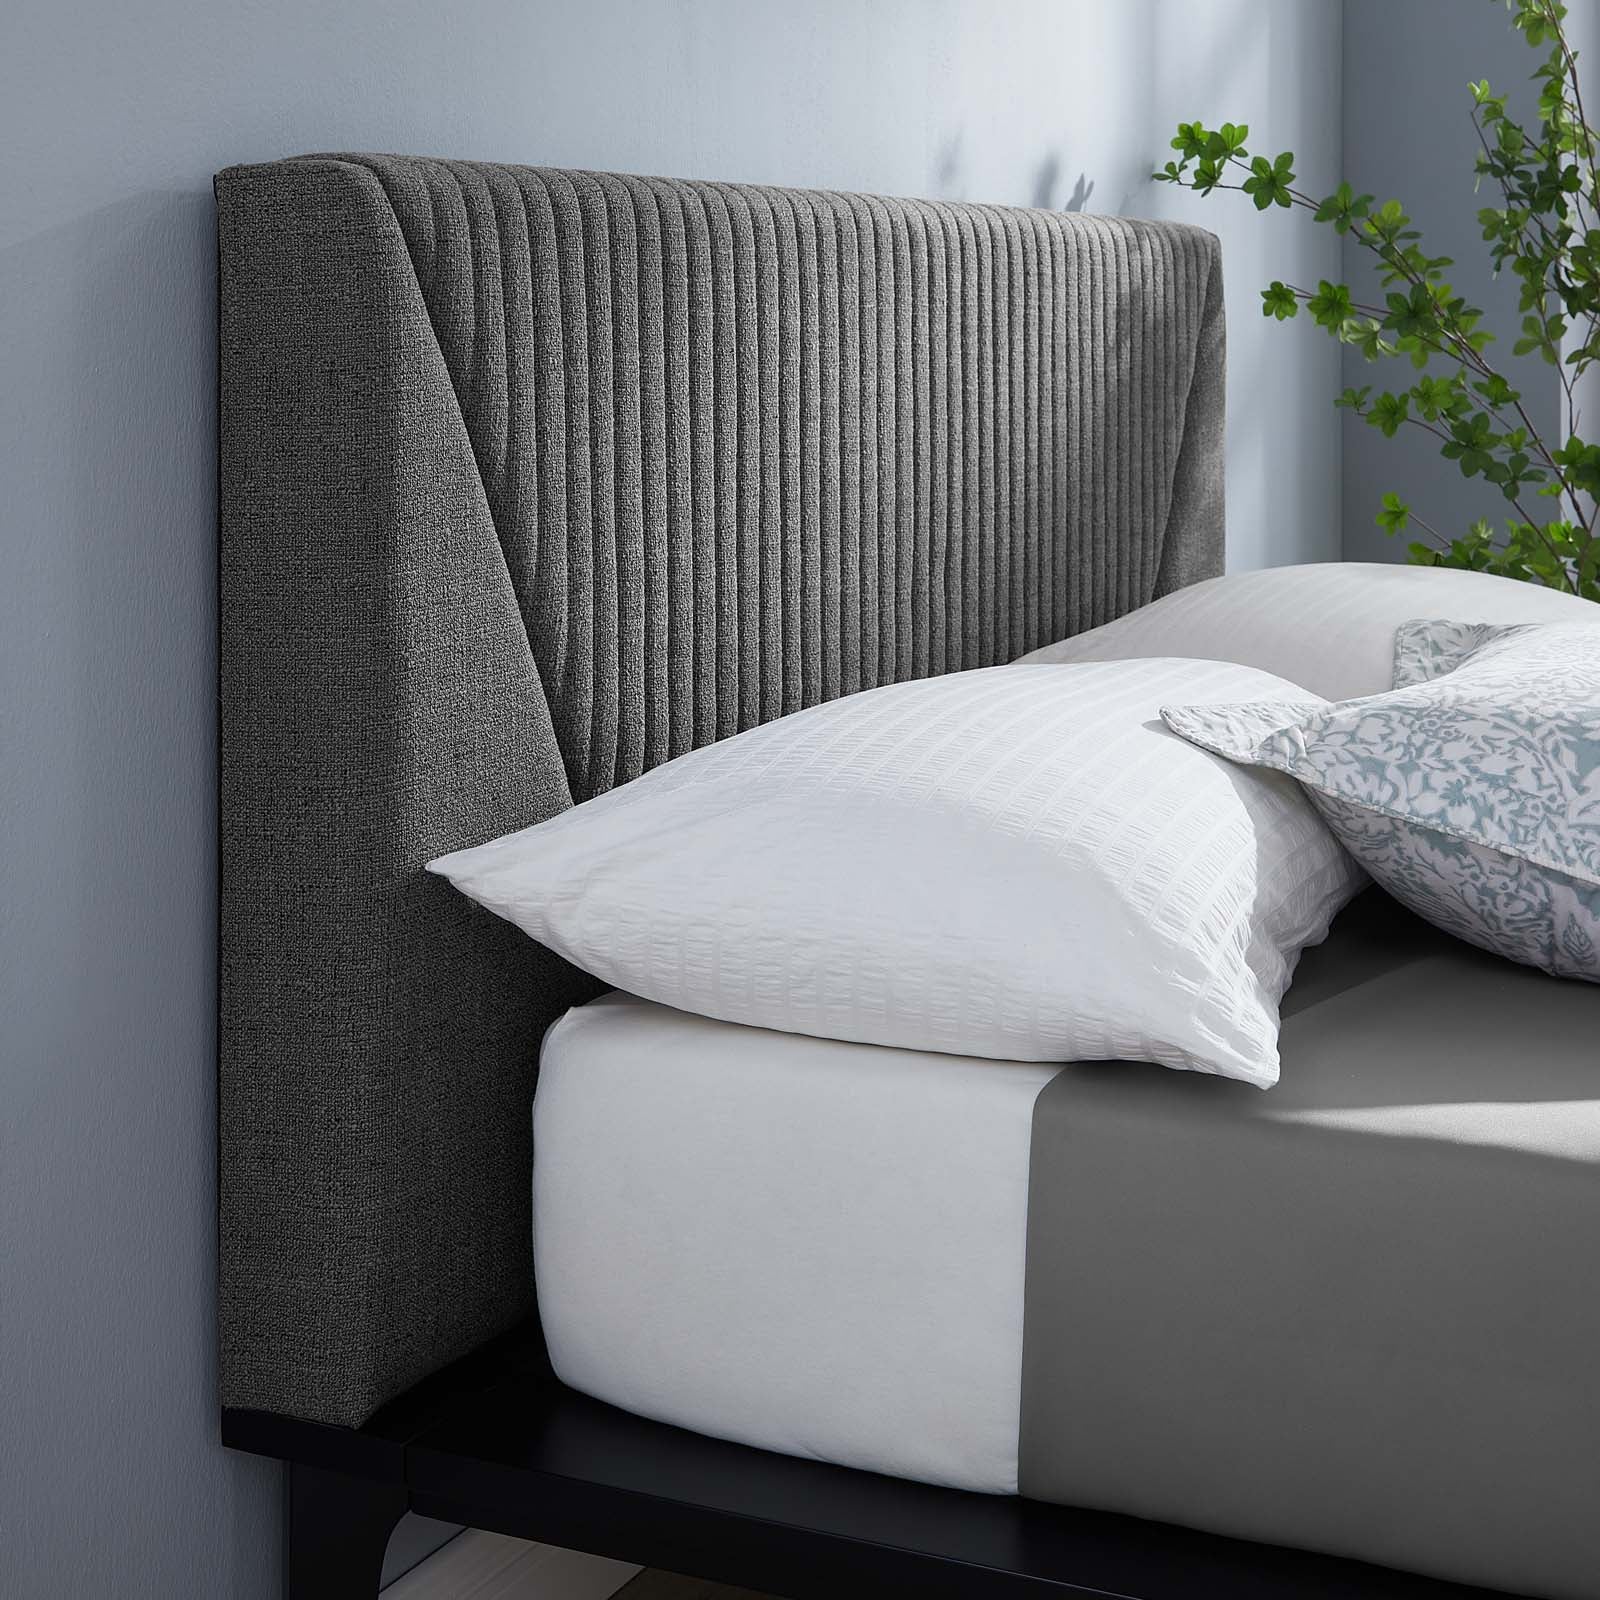 Dakota Upholstered Queen Platform Bed - East Shore Modern Home Furnishings